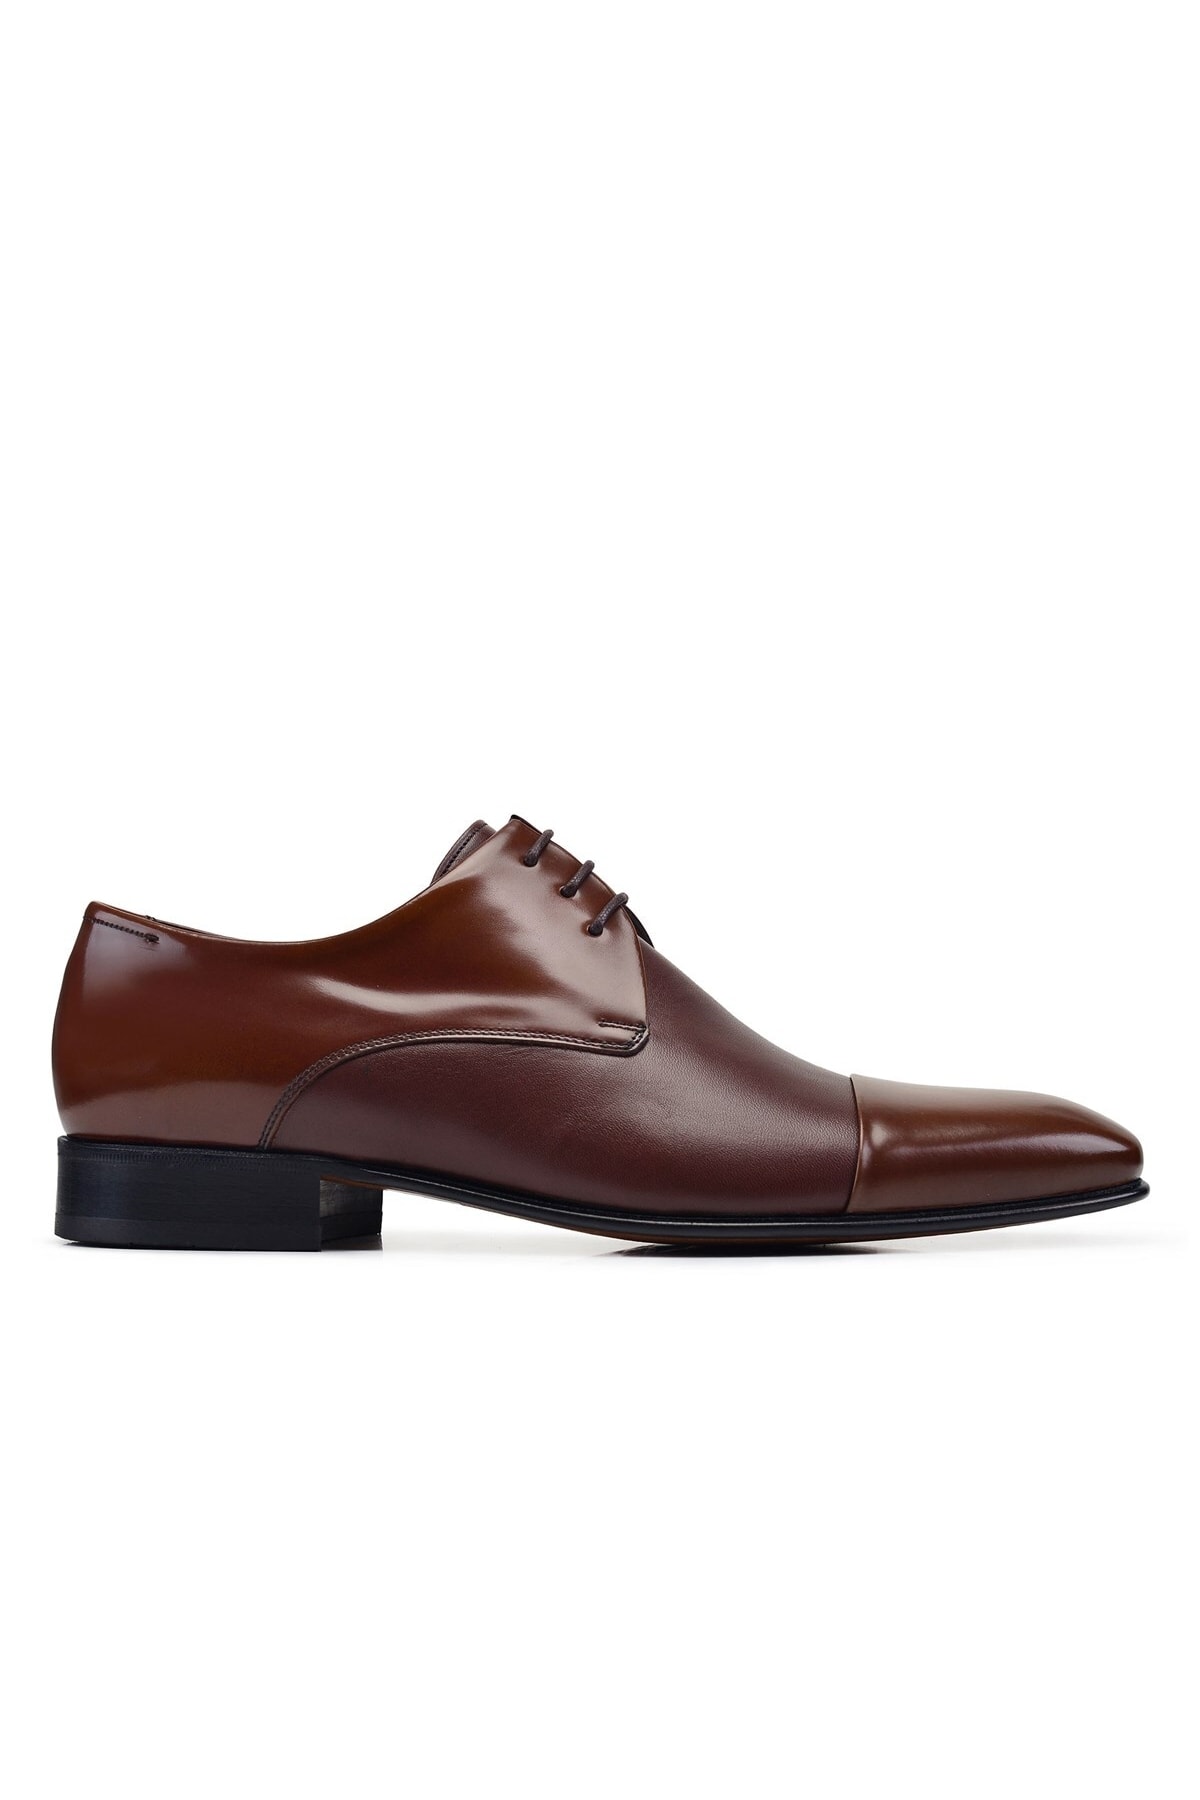 Nevzat Onay Kahverengi Klasik Bağcıklı Kösele Erkek Ayakkabı -60651-